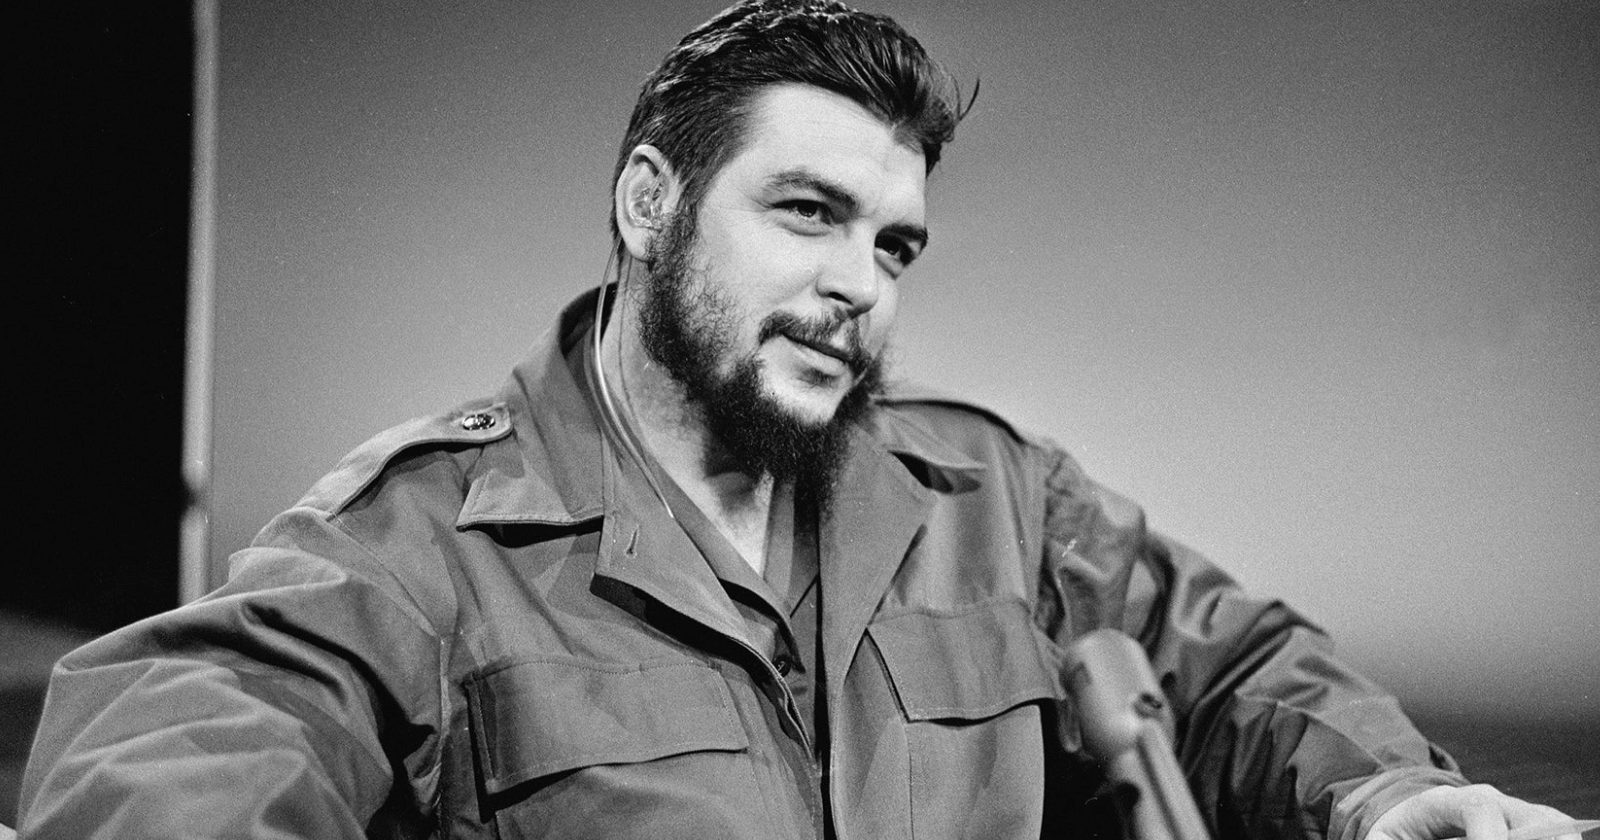 História de quem foi Che Guevara vai te dizer se ele foi um herói ou vilão que tanto falam